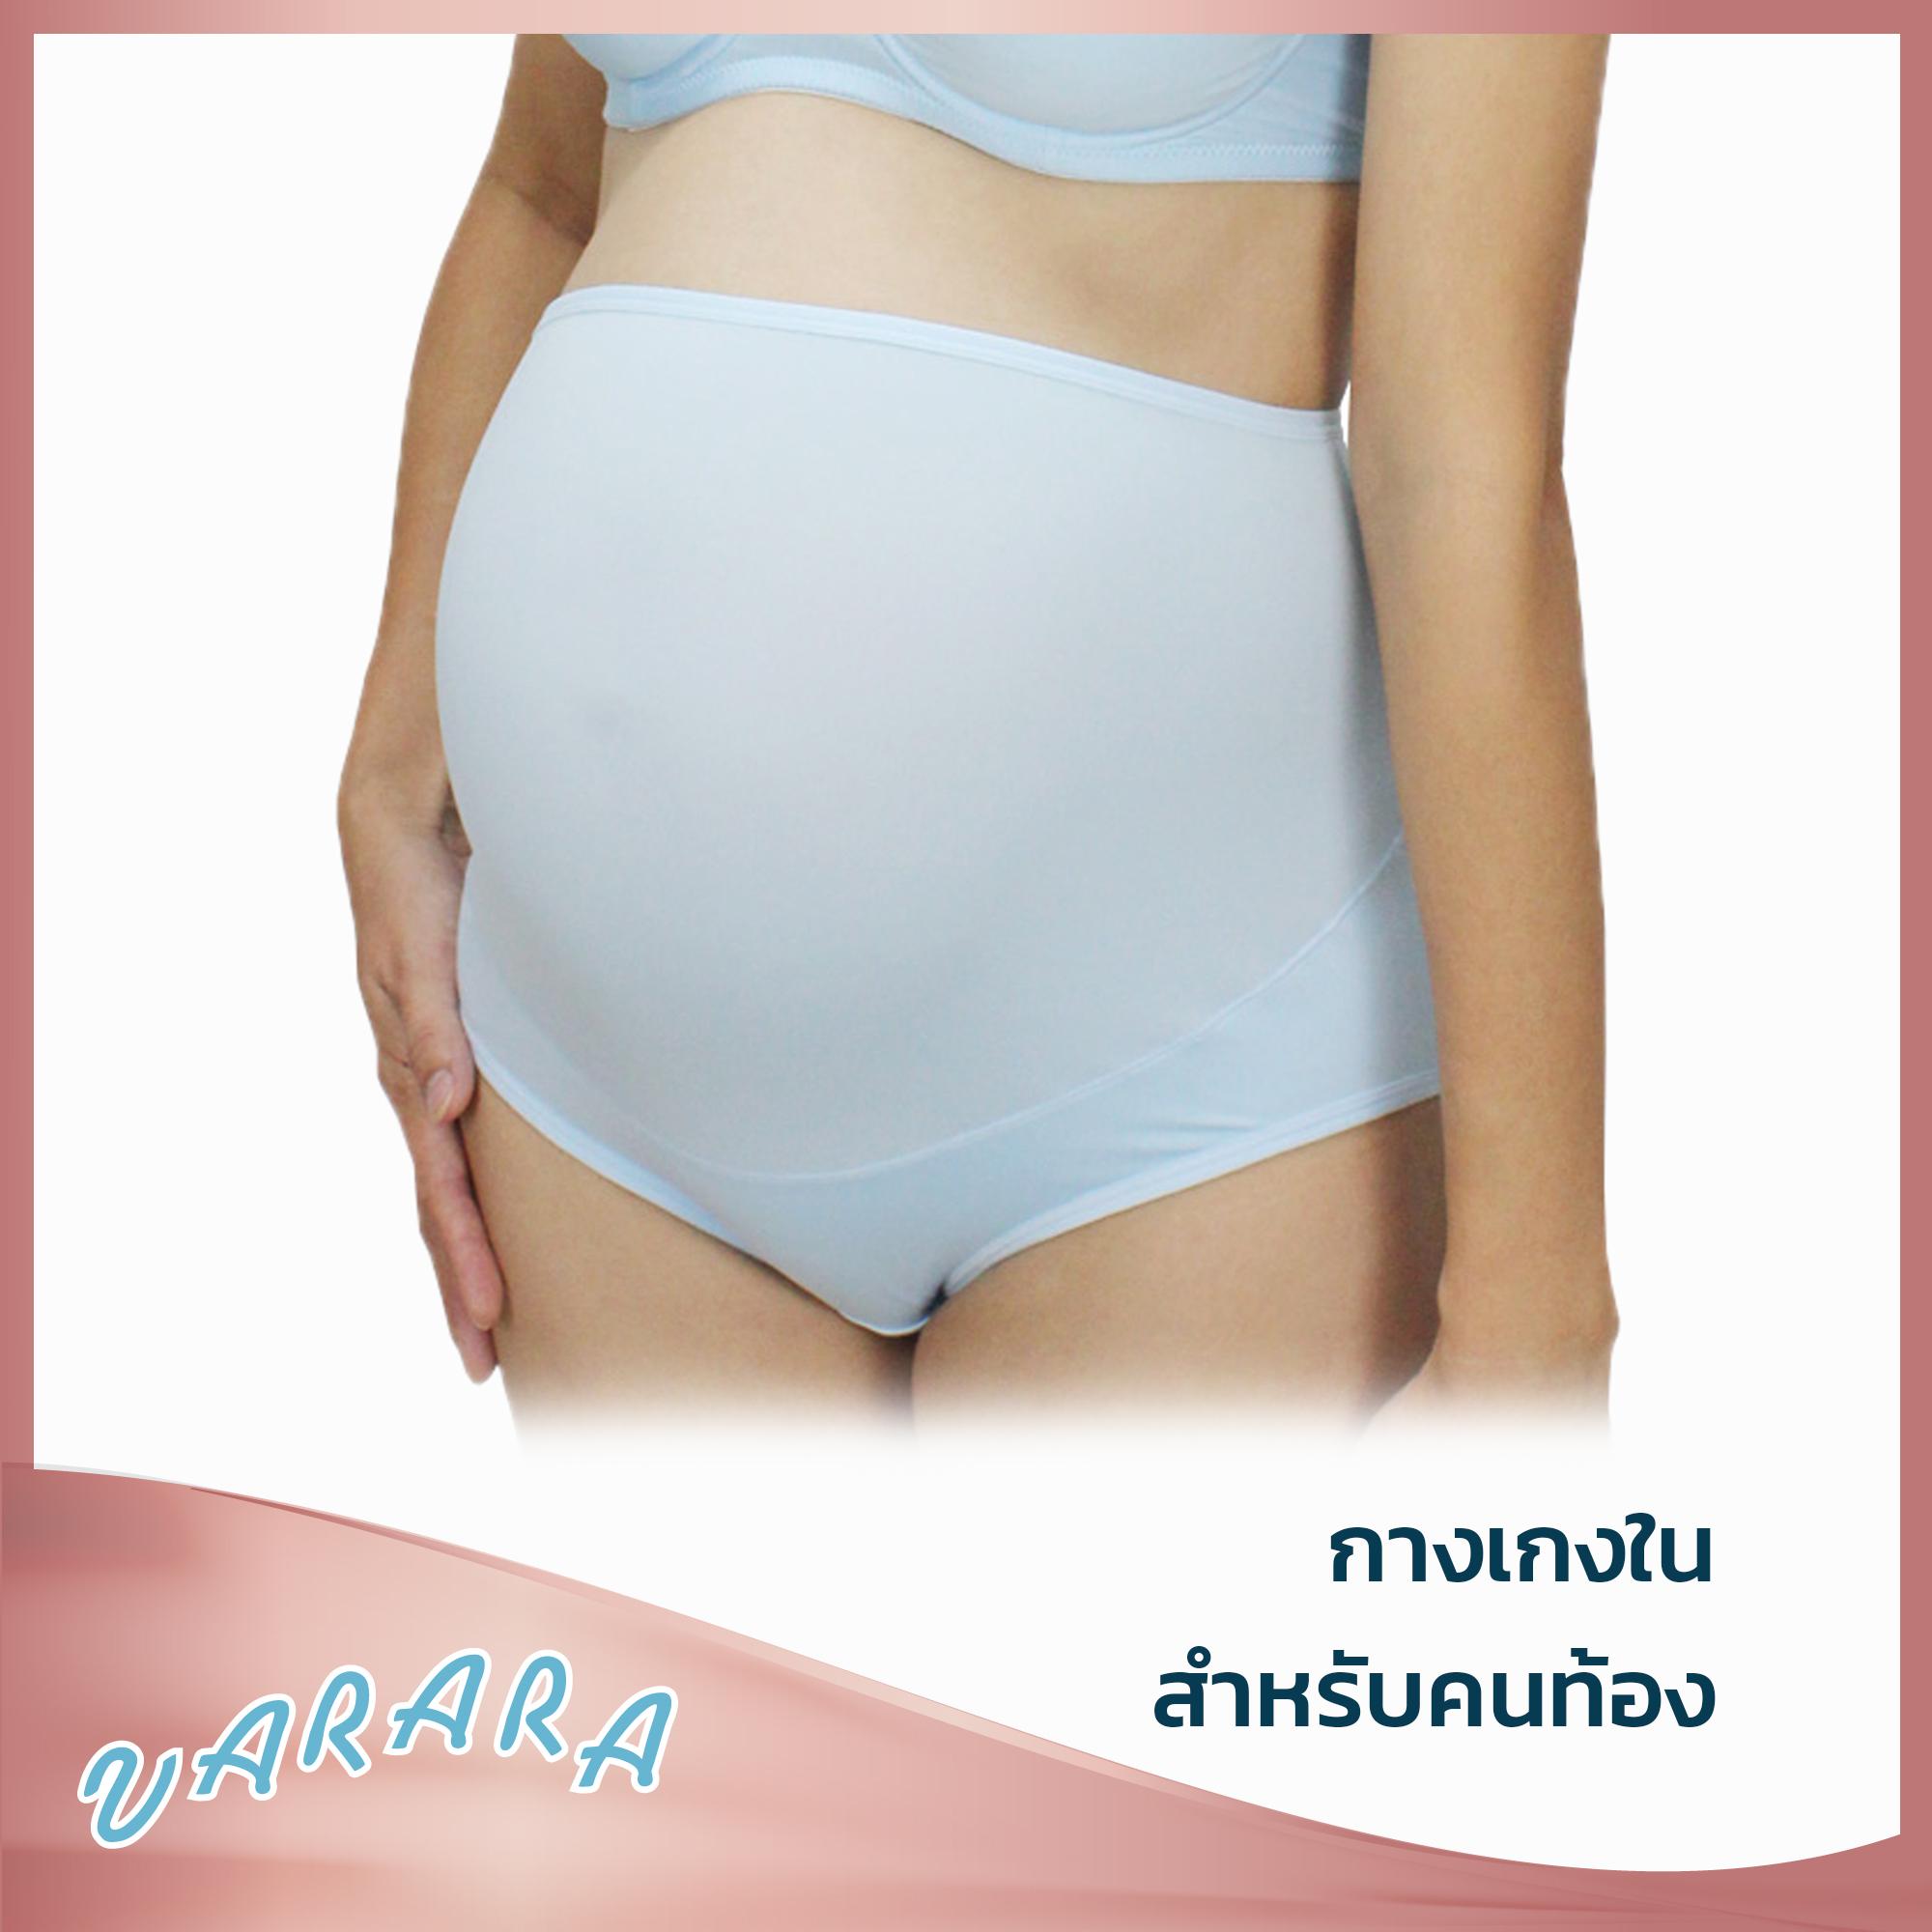 กางเกงคนท้องพยุงครรภ์ / กางเกงคุณแม่ /Maternity / Varara  รุ่น KX9501 สีพื้น ( เบส สีฟ้า สีชมพู)  (ผู้ผลิตในเครือชุดชั้นในวาโก้)